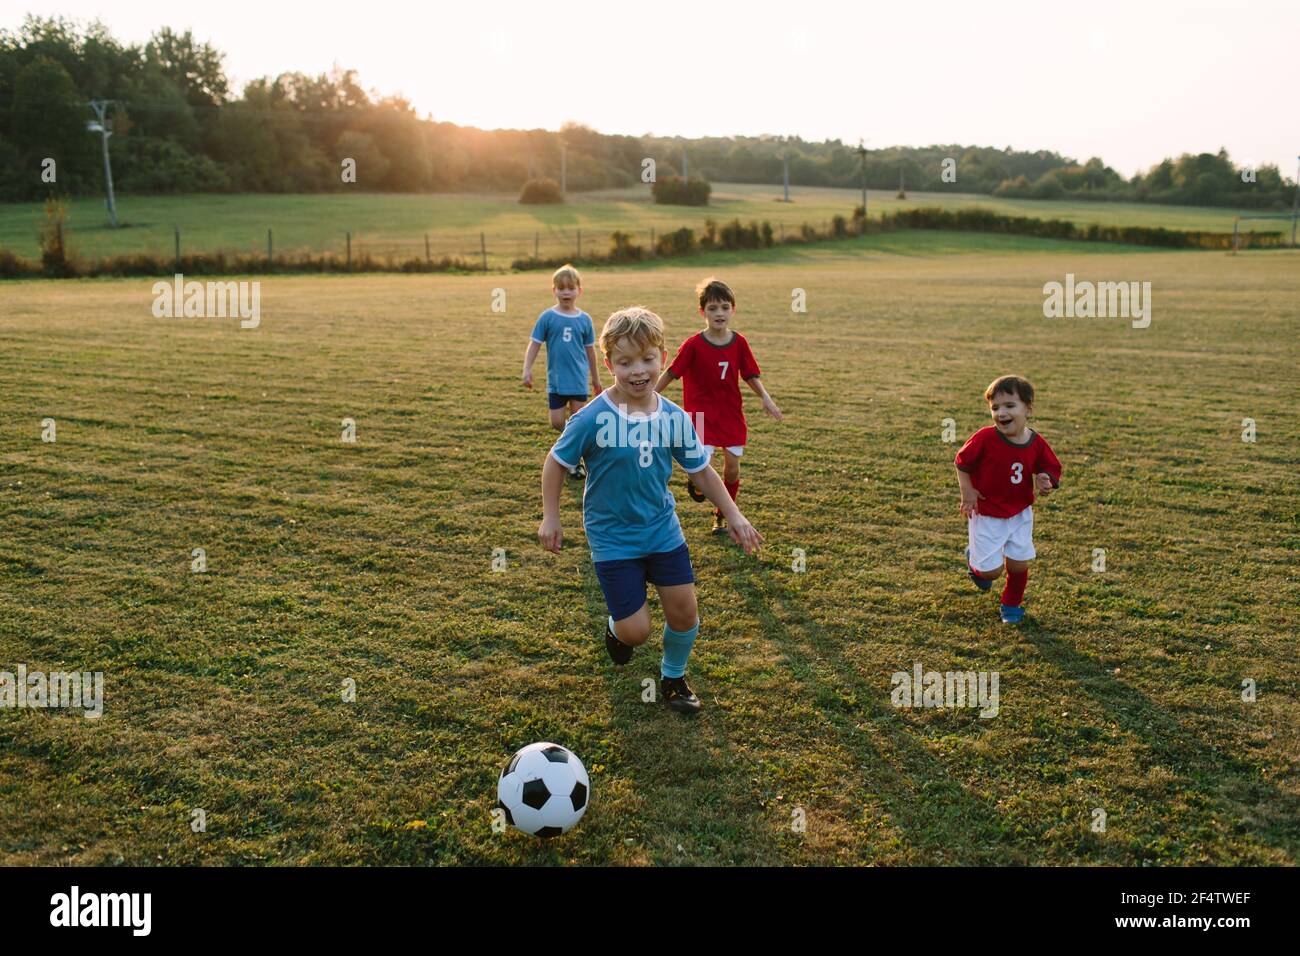 Bambini che giocano a calcio. Ragazzi allegri in abiti da calcio che corrono dopo la palla sul campo. Foto Stock